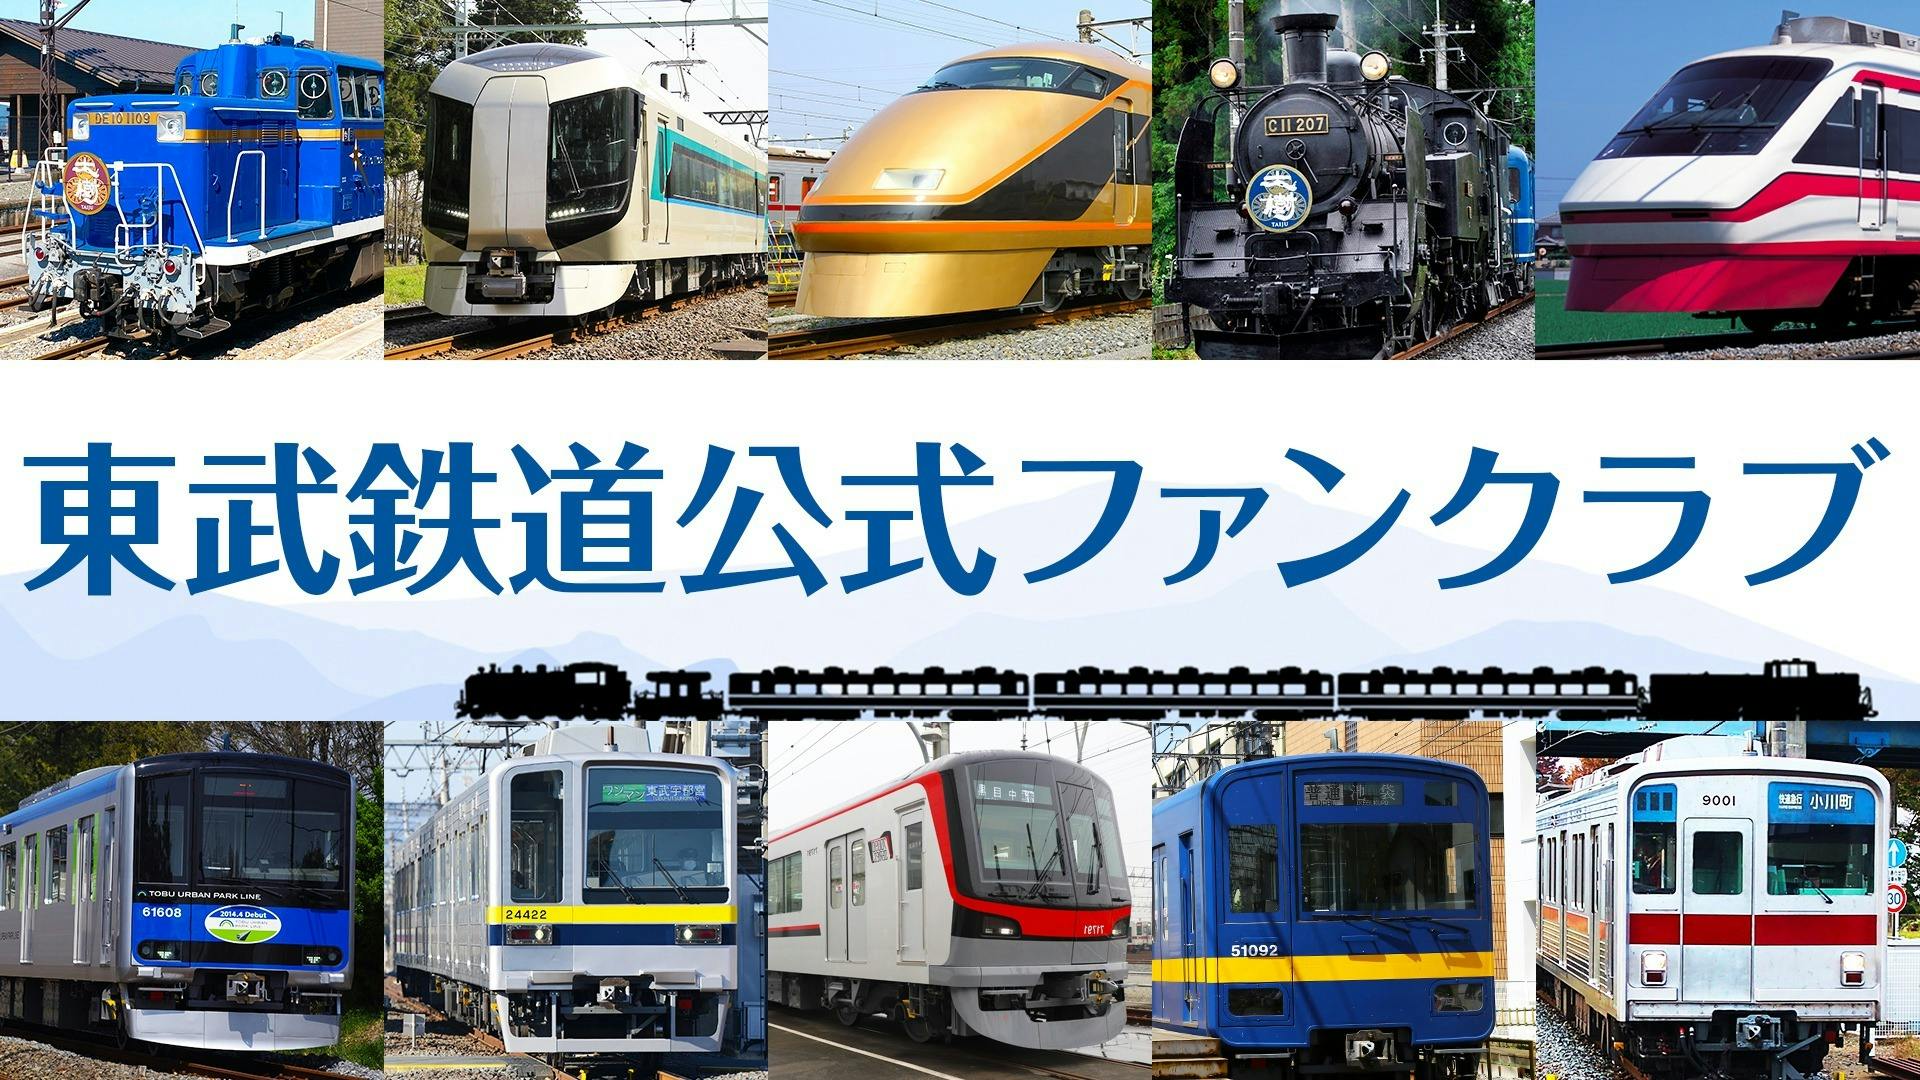 東武鉄道公式ファンクラブ - 東武鉄道公式ファンクラブ - DMM オンラインサロン